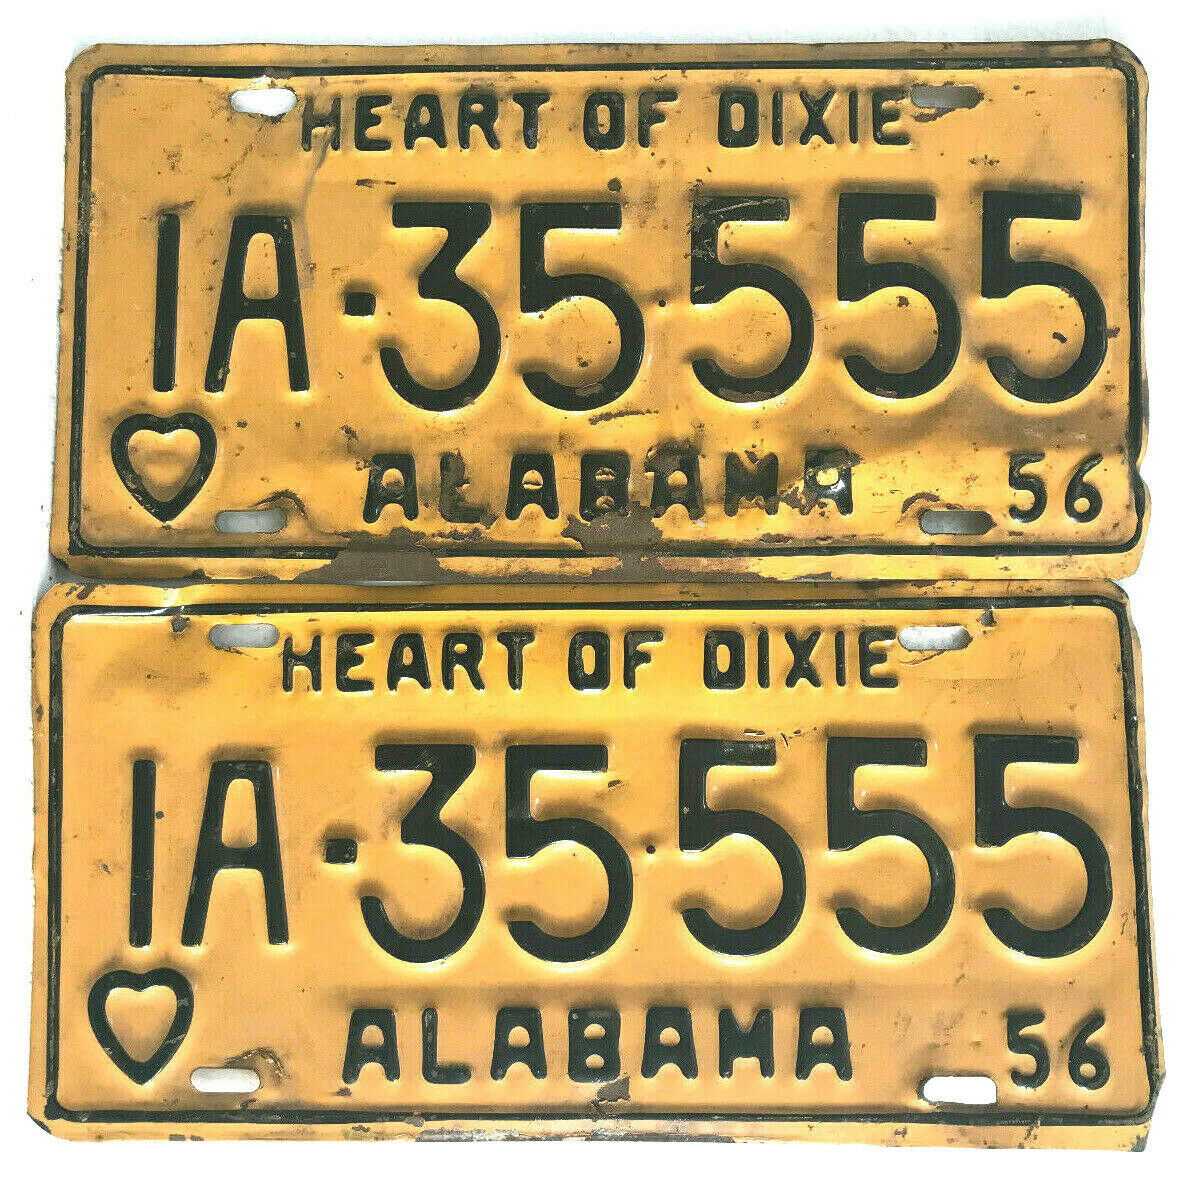 1956 Alabama License Plates - All Original Pair